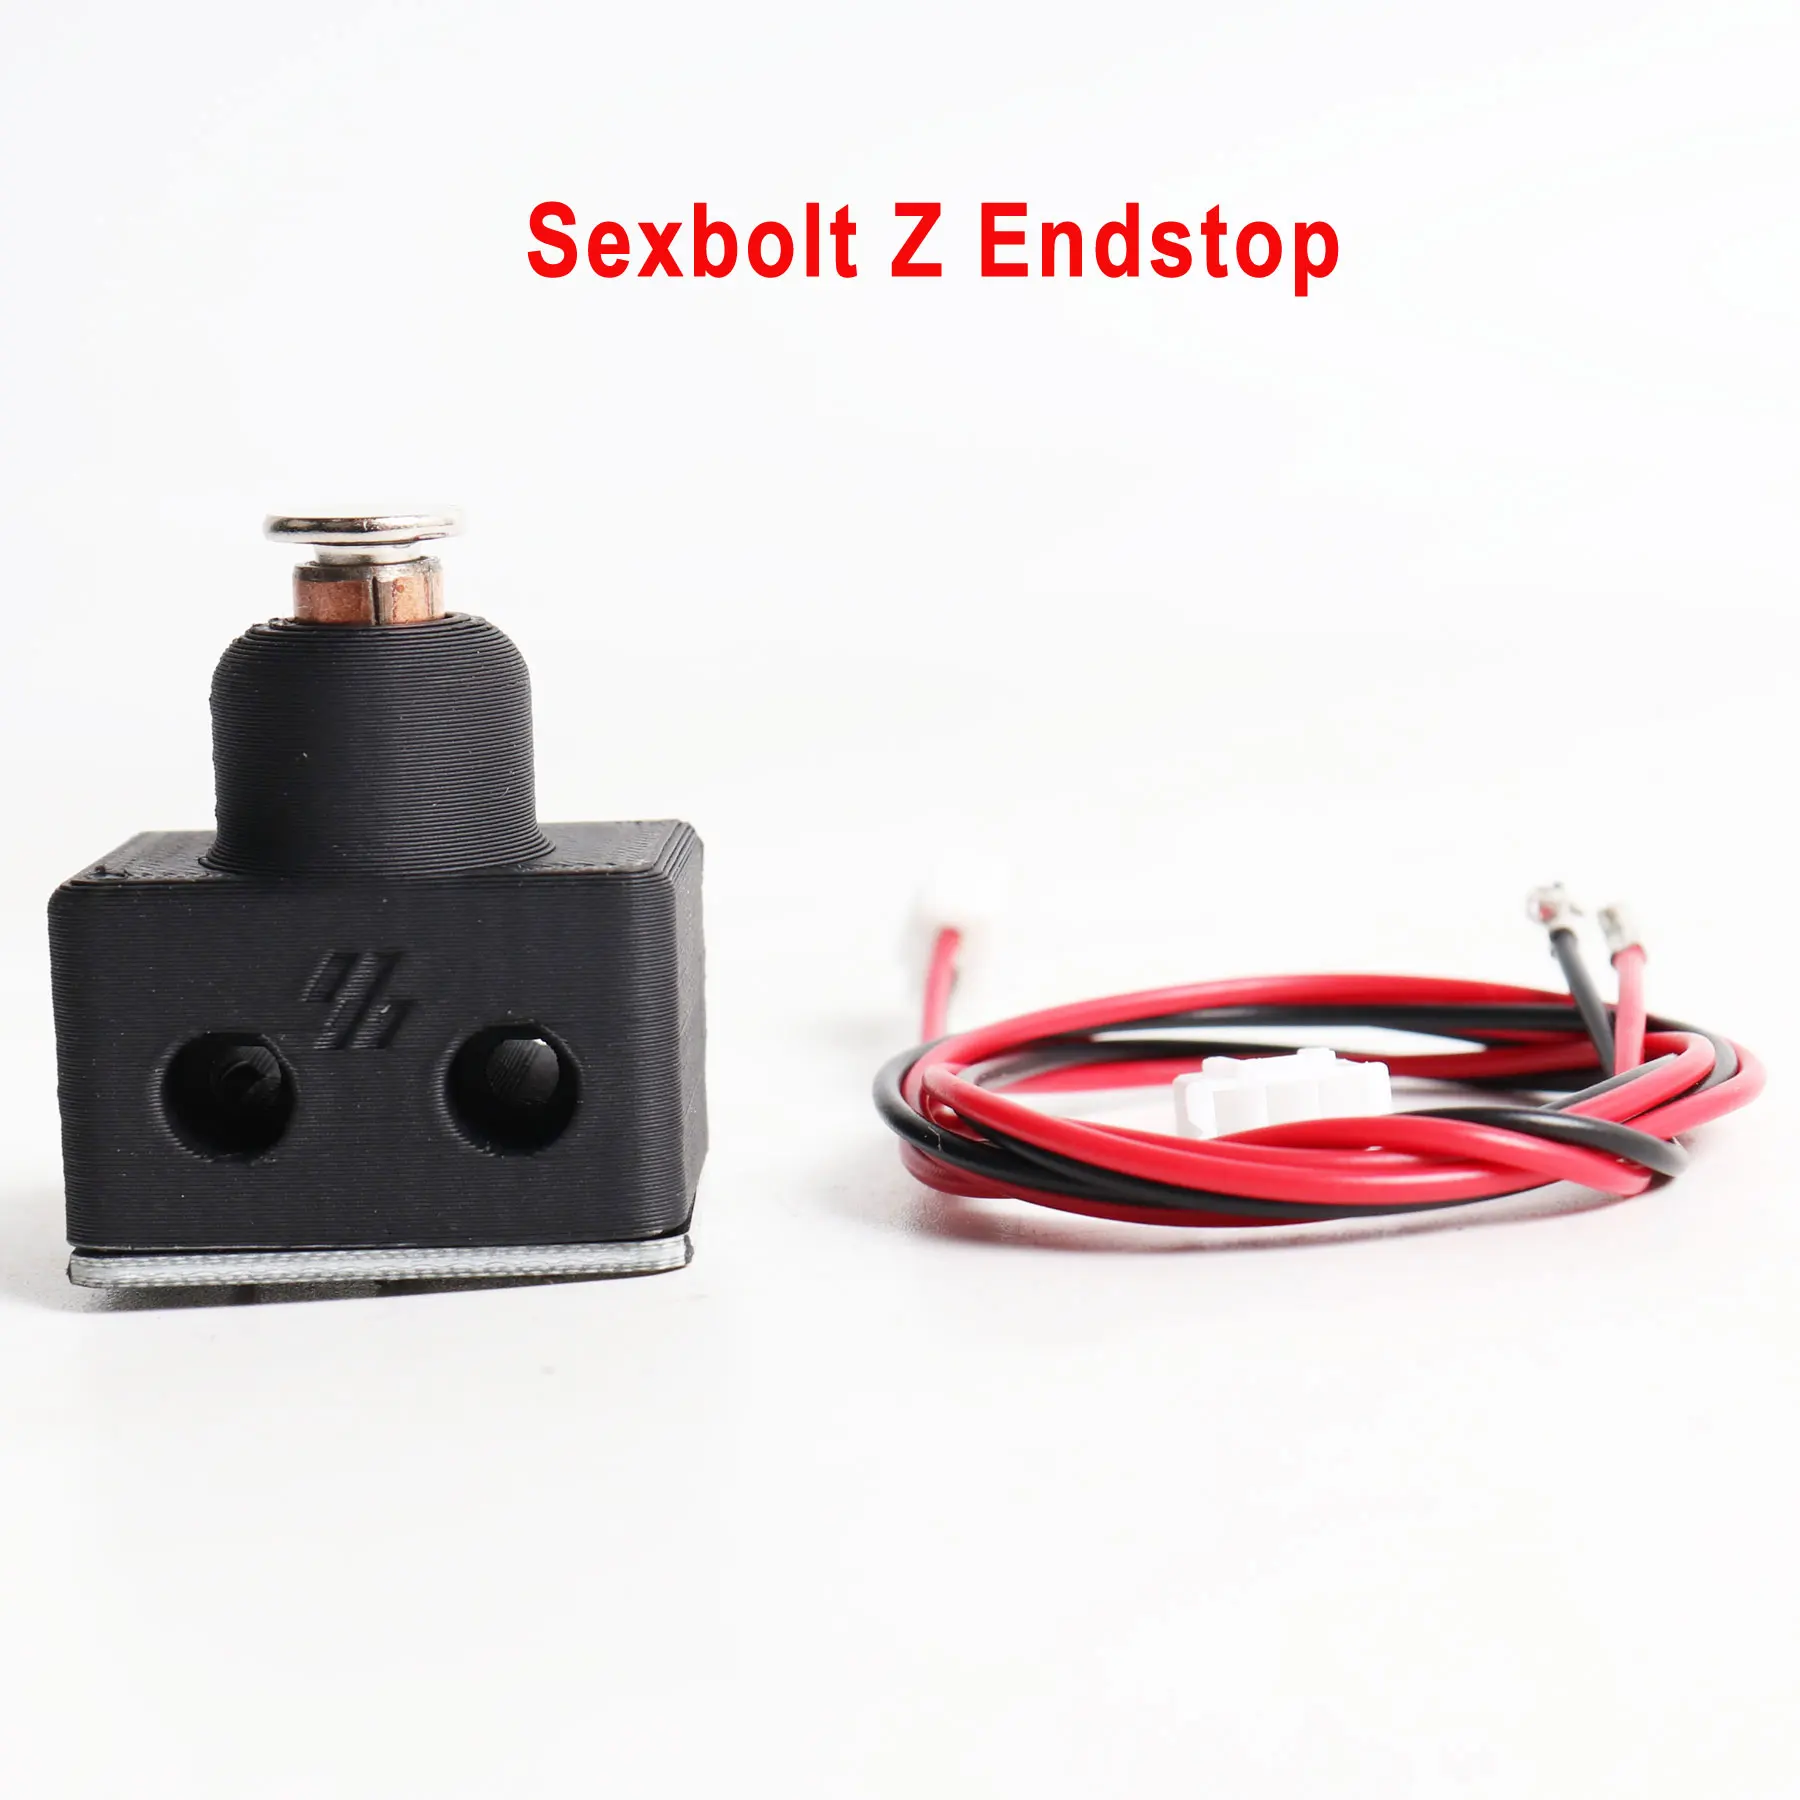 Blurolls Hartk Sexbolt Z Endstop PCB Hardware Kit MOD FOR Voron 2.4 Trident 3D Printer